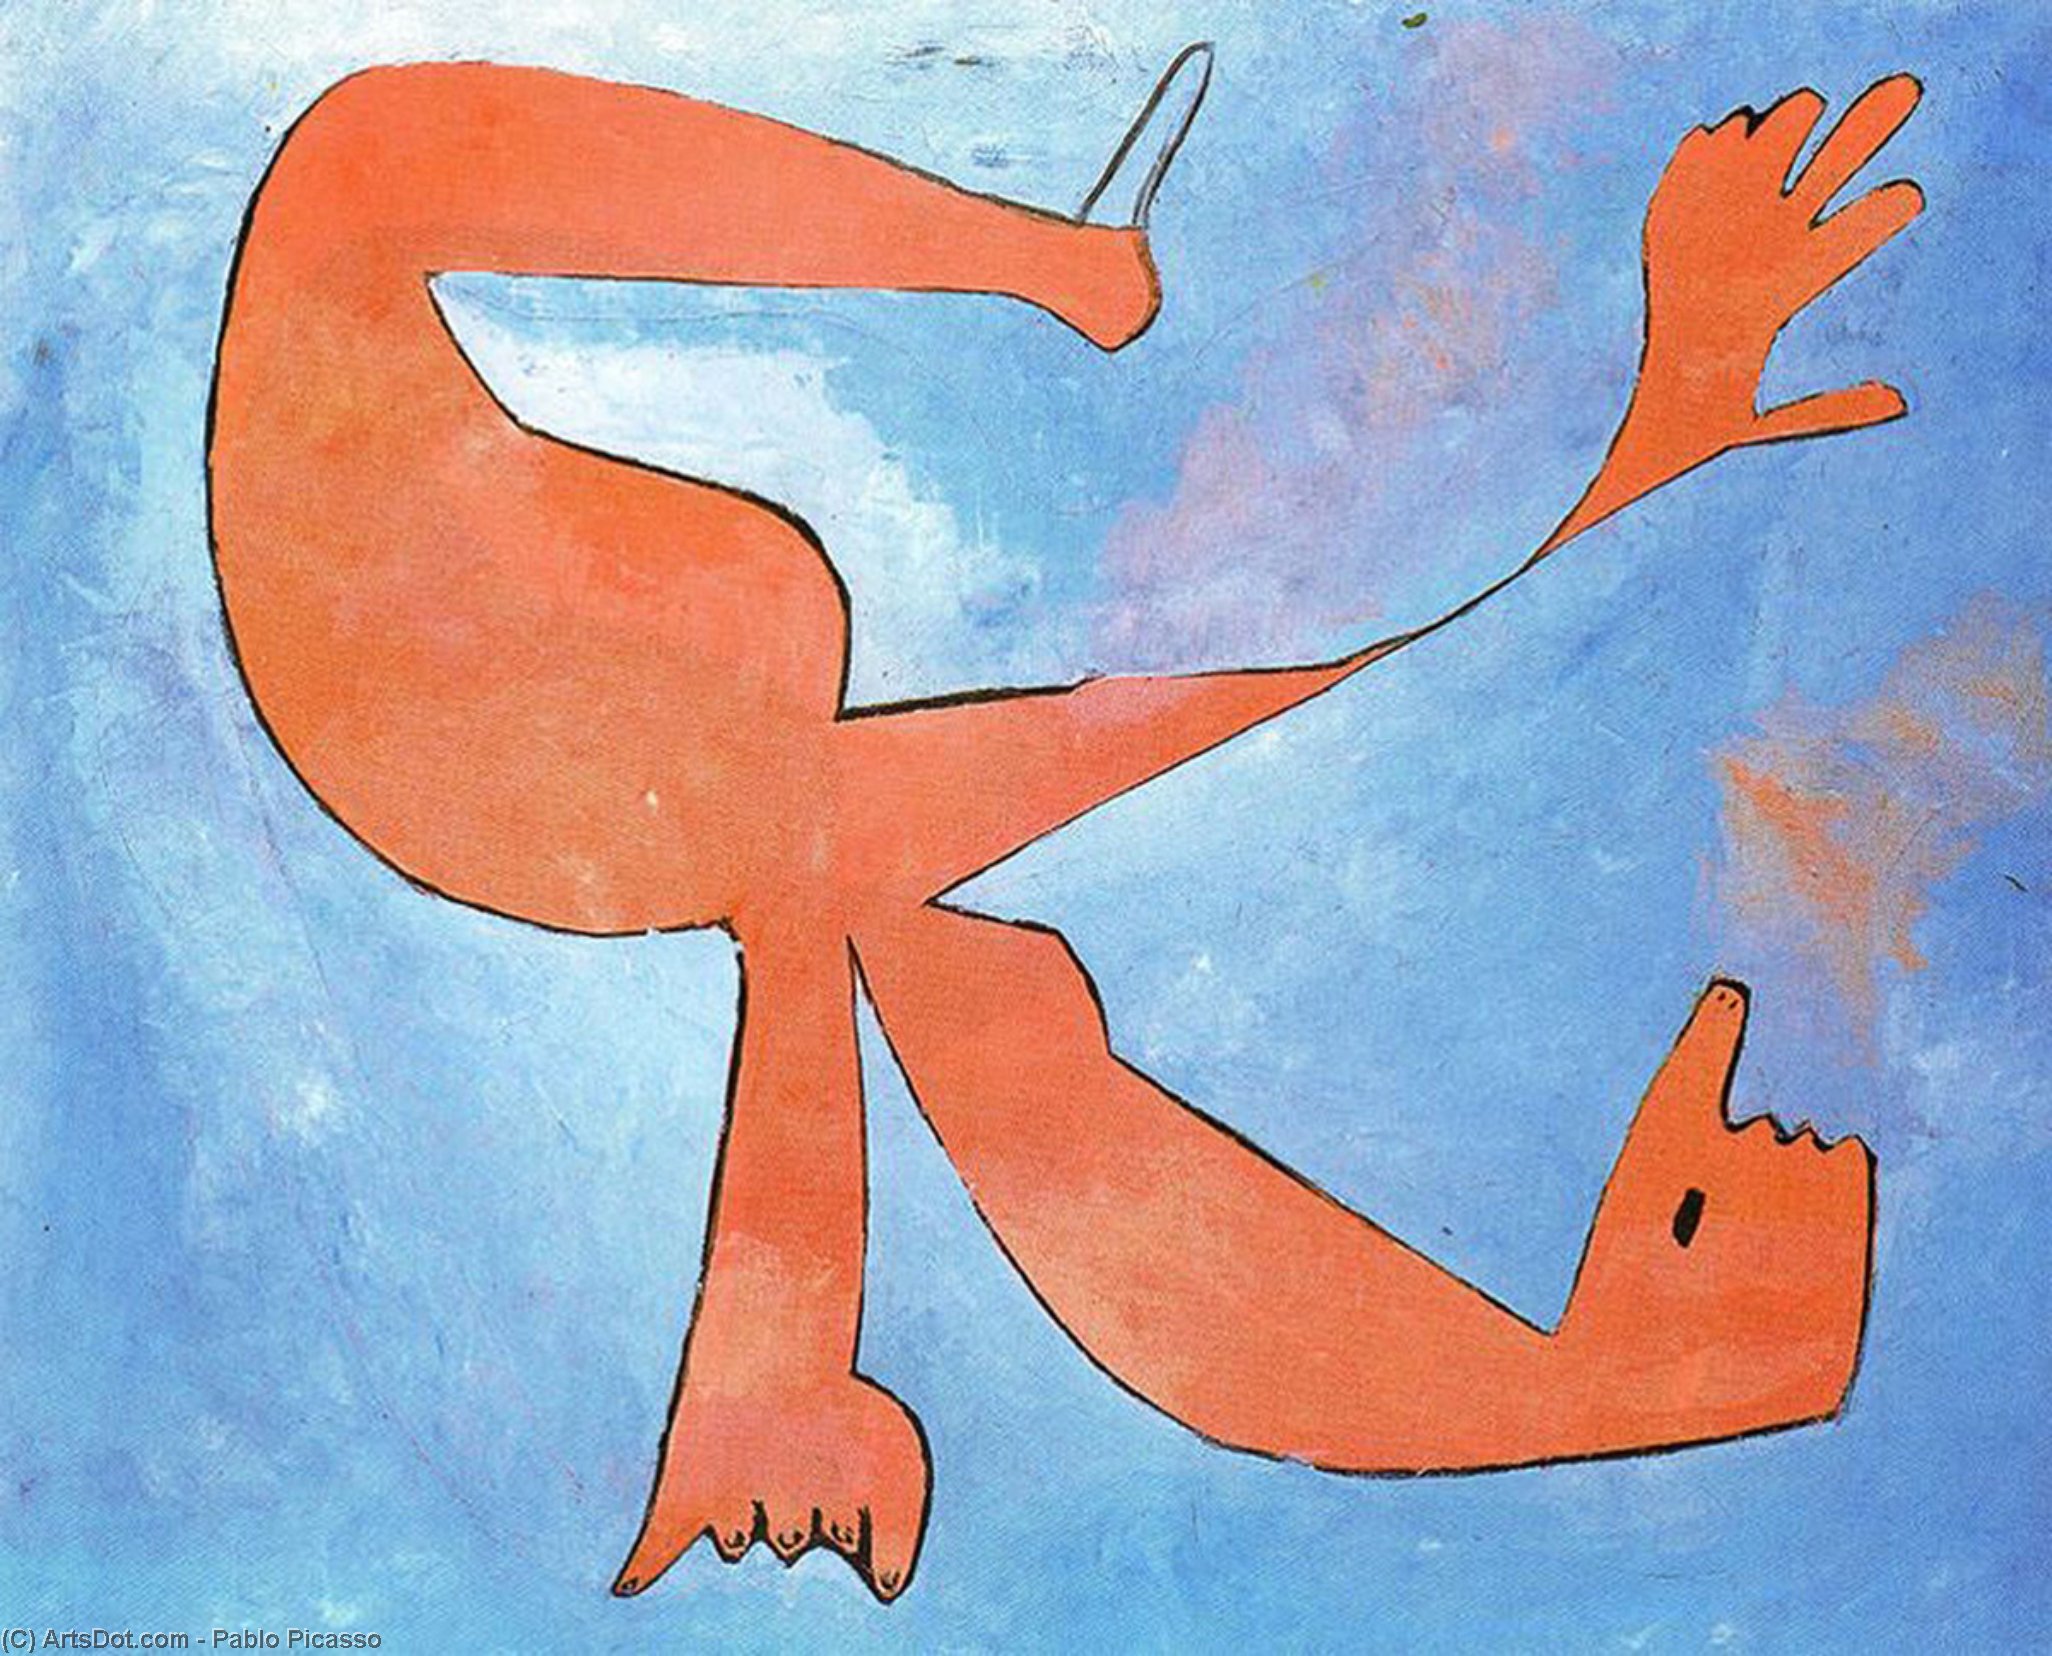 WikiOO.org – 美術百科全書 - 繪畫，作品 Pablo Picasso - 游泳者